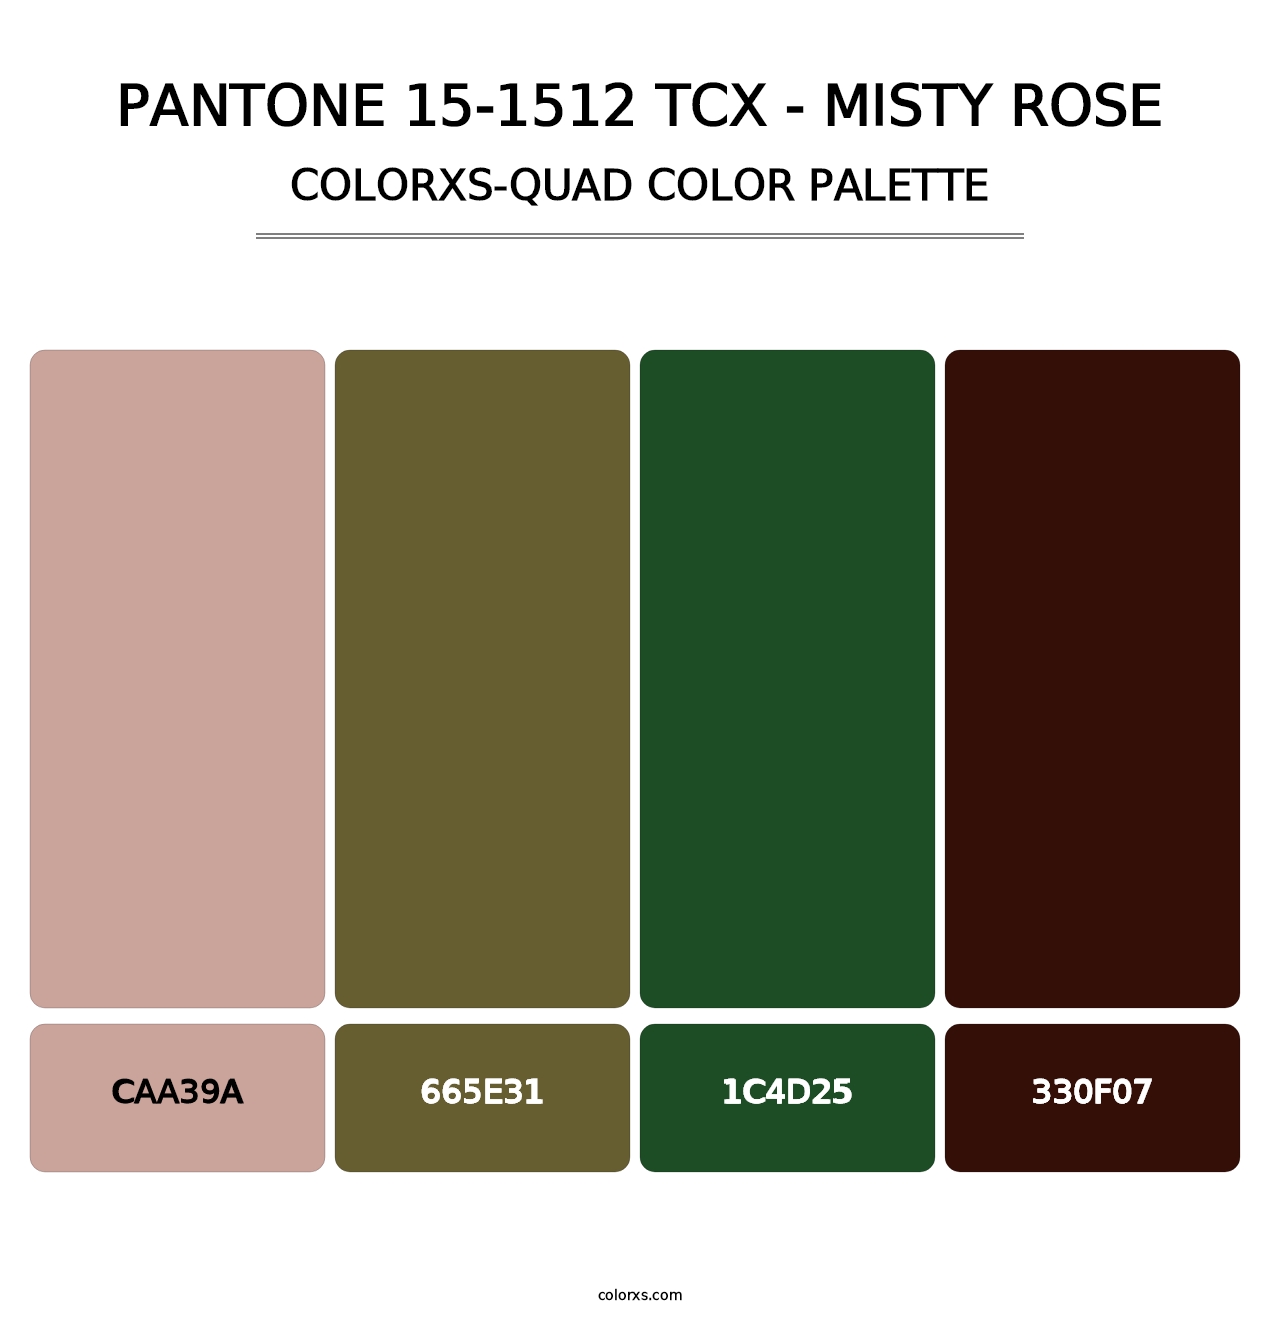 PANTONE 15-1512 TCX - Misty Rose - Colorxs Quad Palette